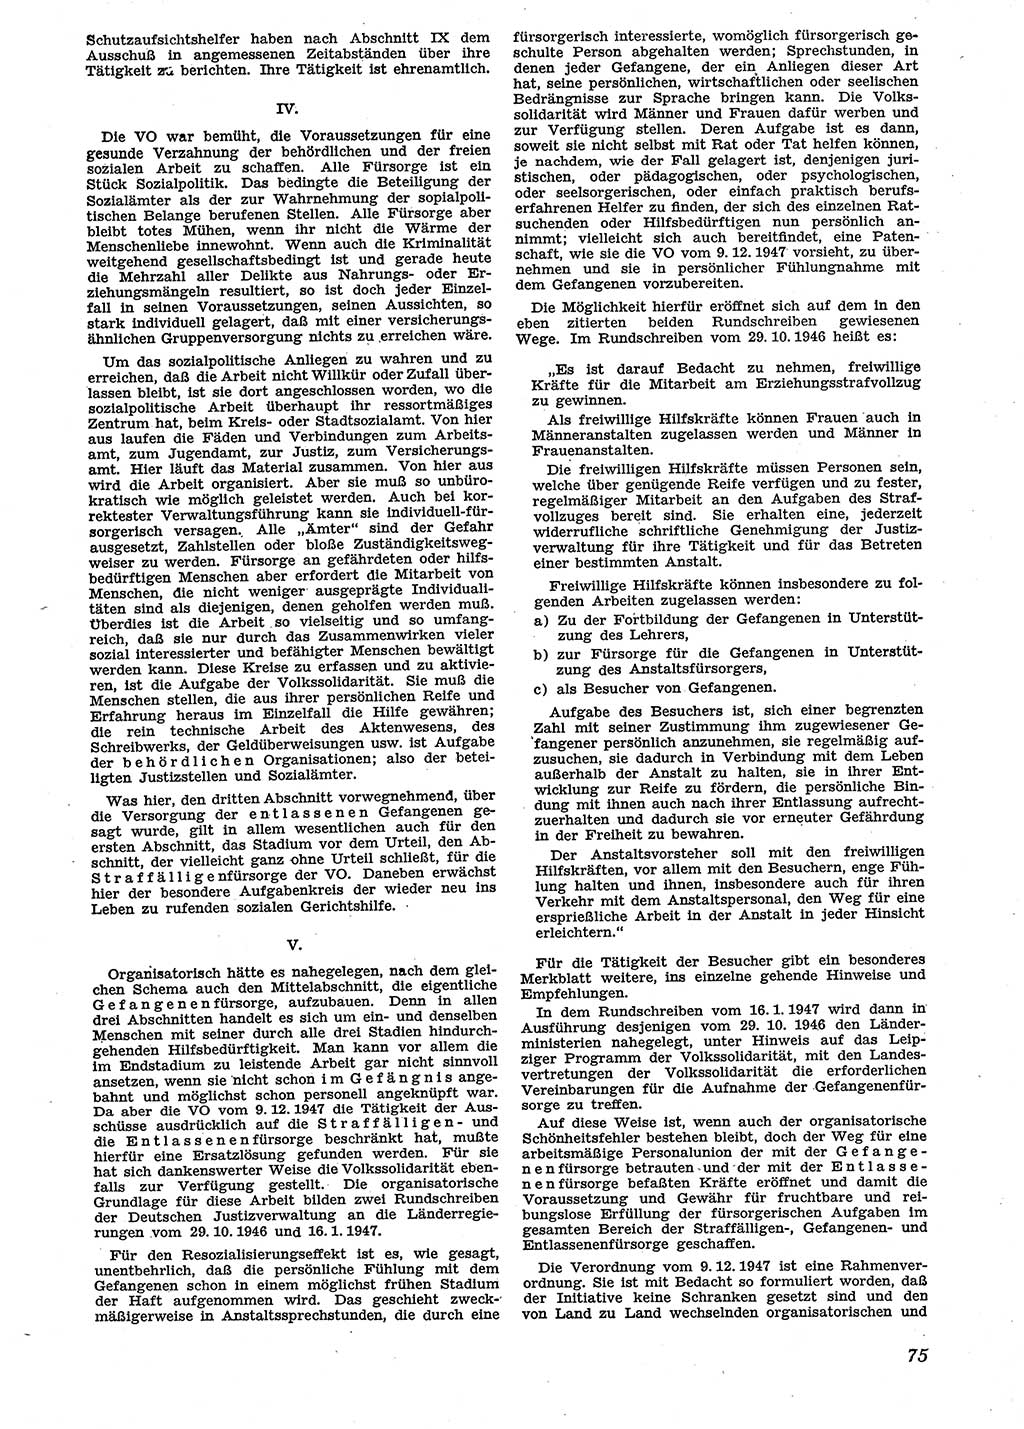 Neue Justiz (NJ), Zeitschrift für Recht und Rechtswissenschaft [Sowjetische Besatzungszone (SBZ) Deutschland], 2. Jahrgang 1948, Seite 75 (NJ SBZ Dtl. 1948, S. 75)